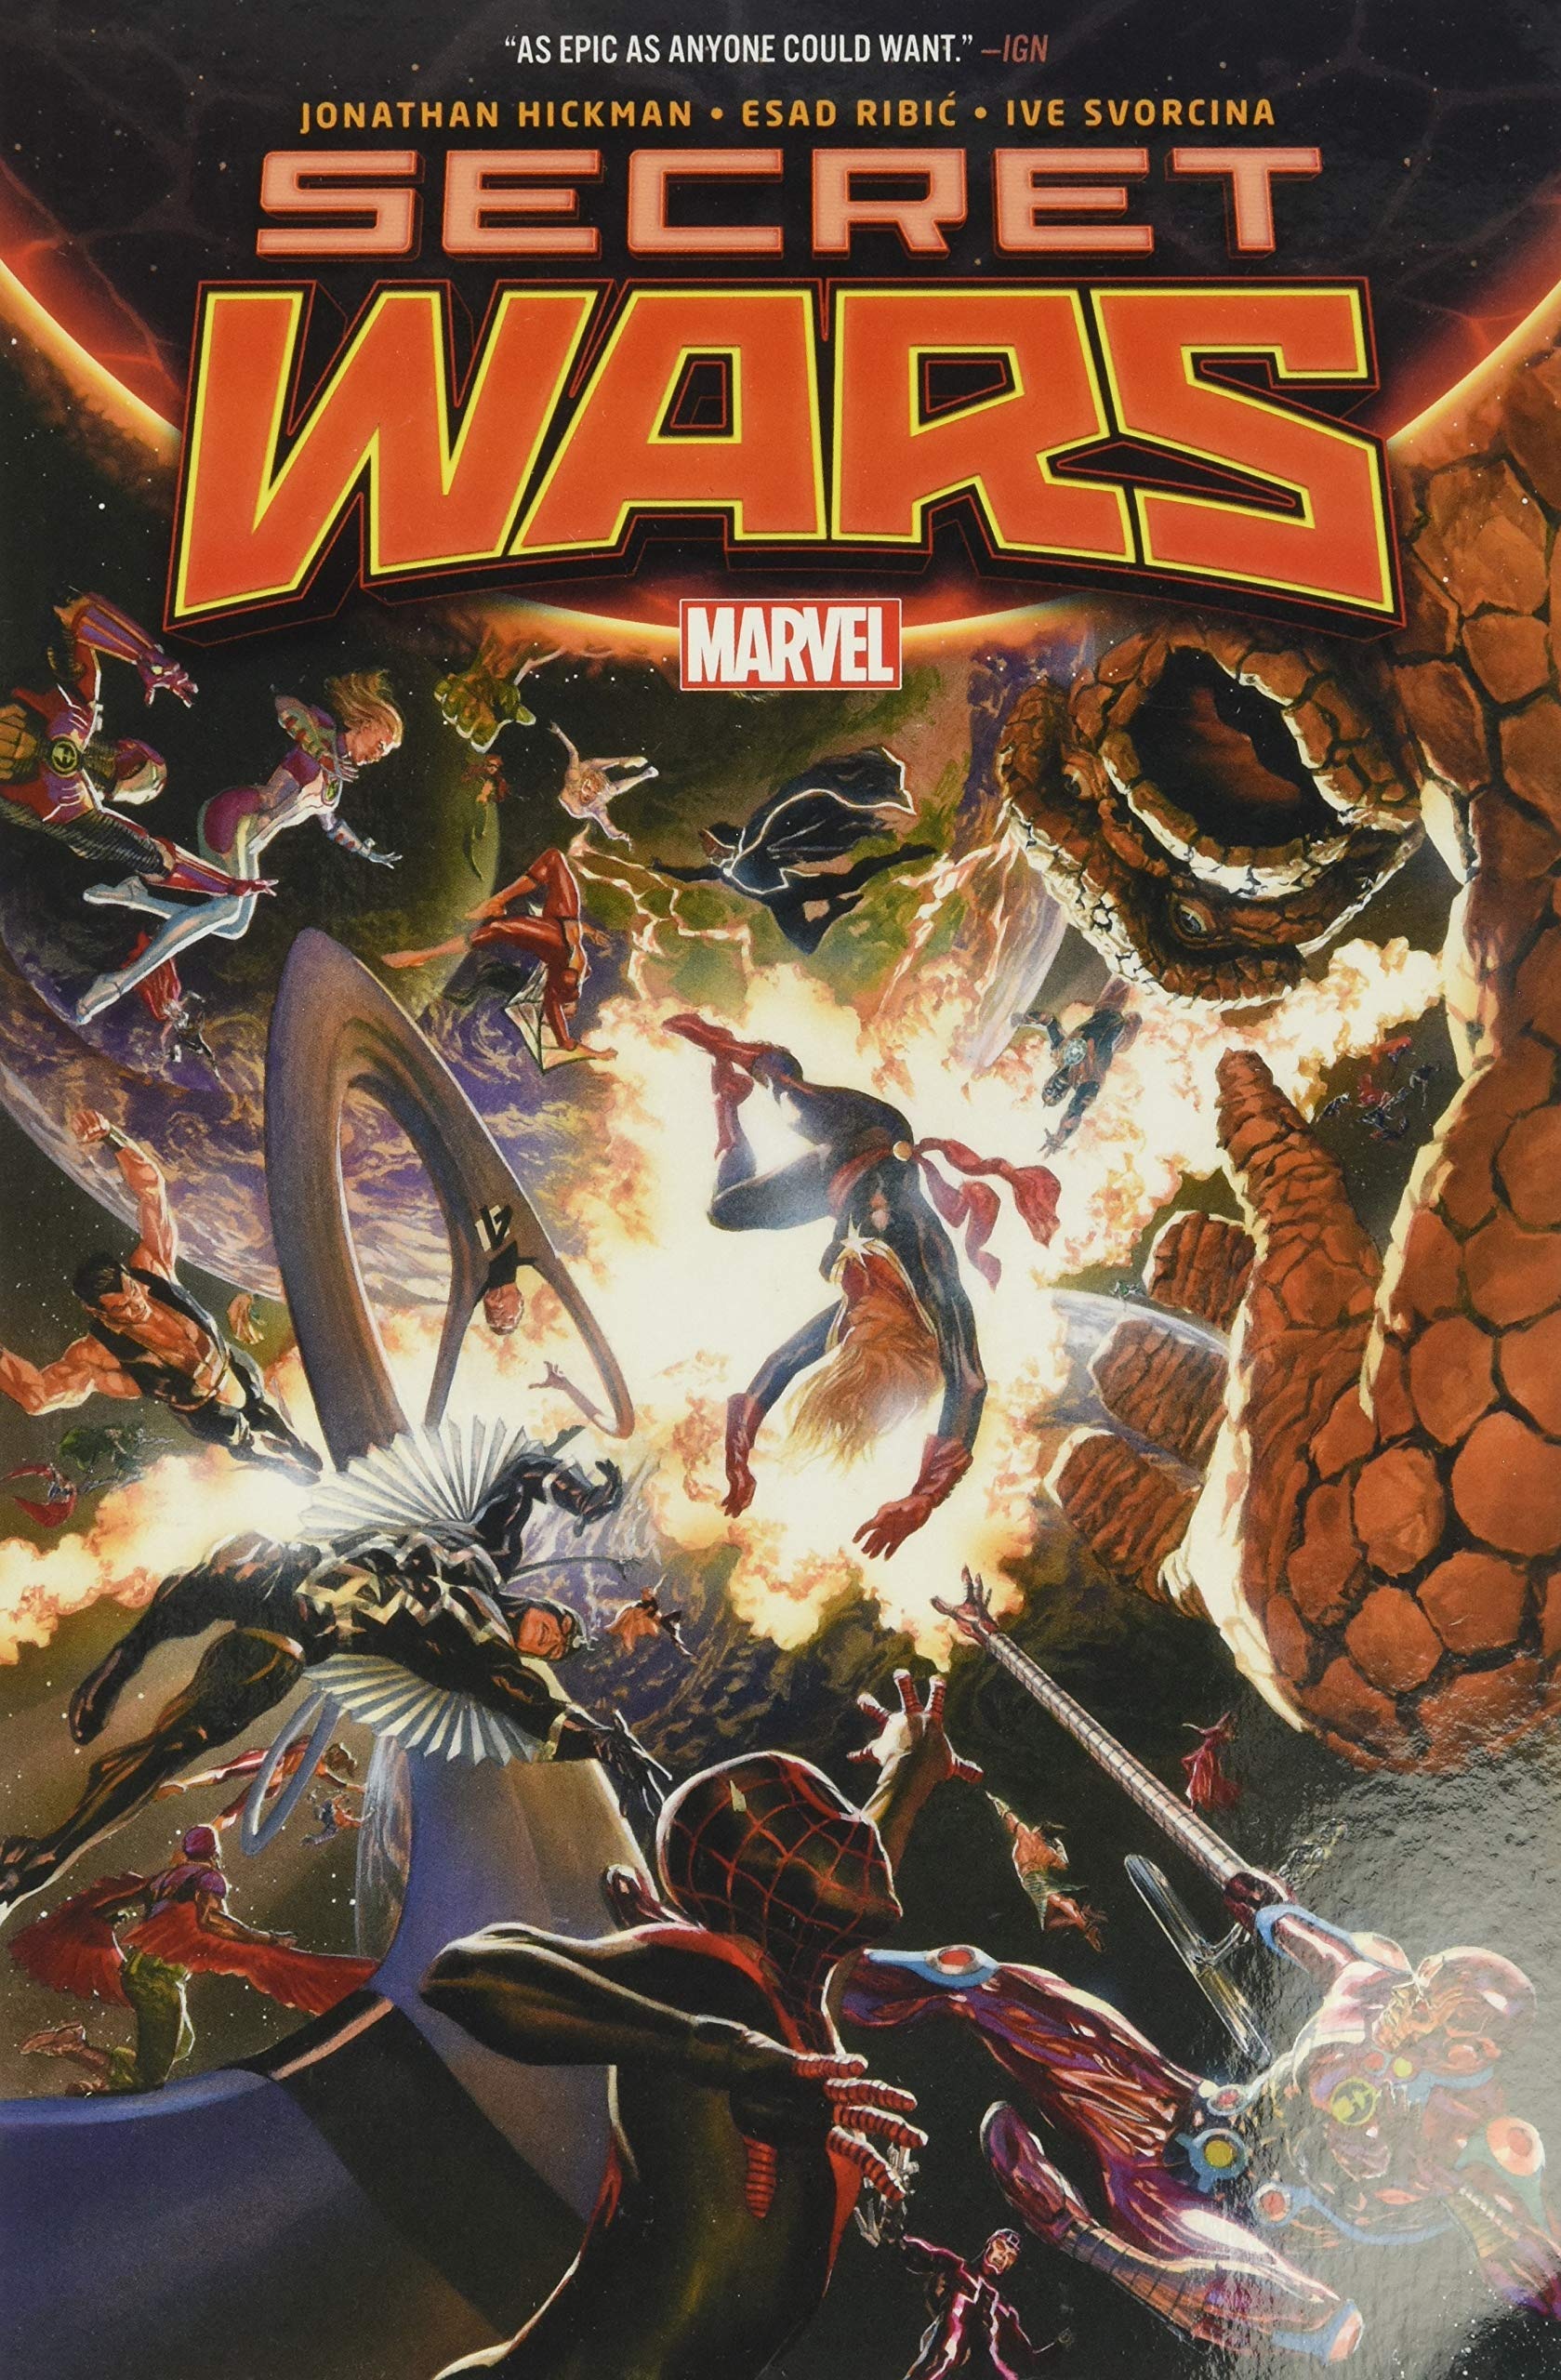 Avengers: Secret Wars - Cuộc chiến đa vũ trụ hoành tráng nhất nhì lịch sử Marvel sắp đến